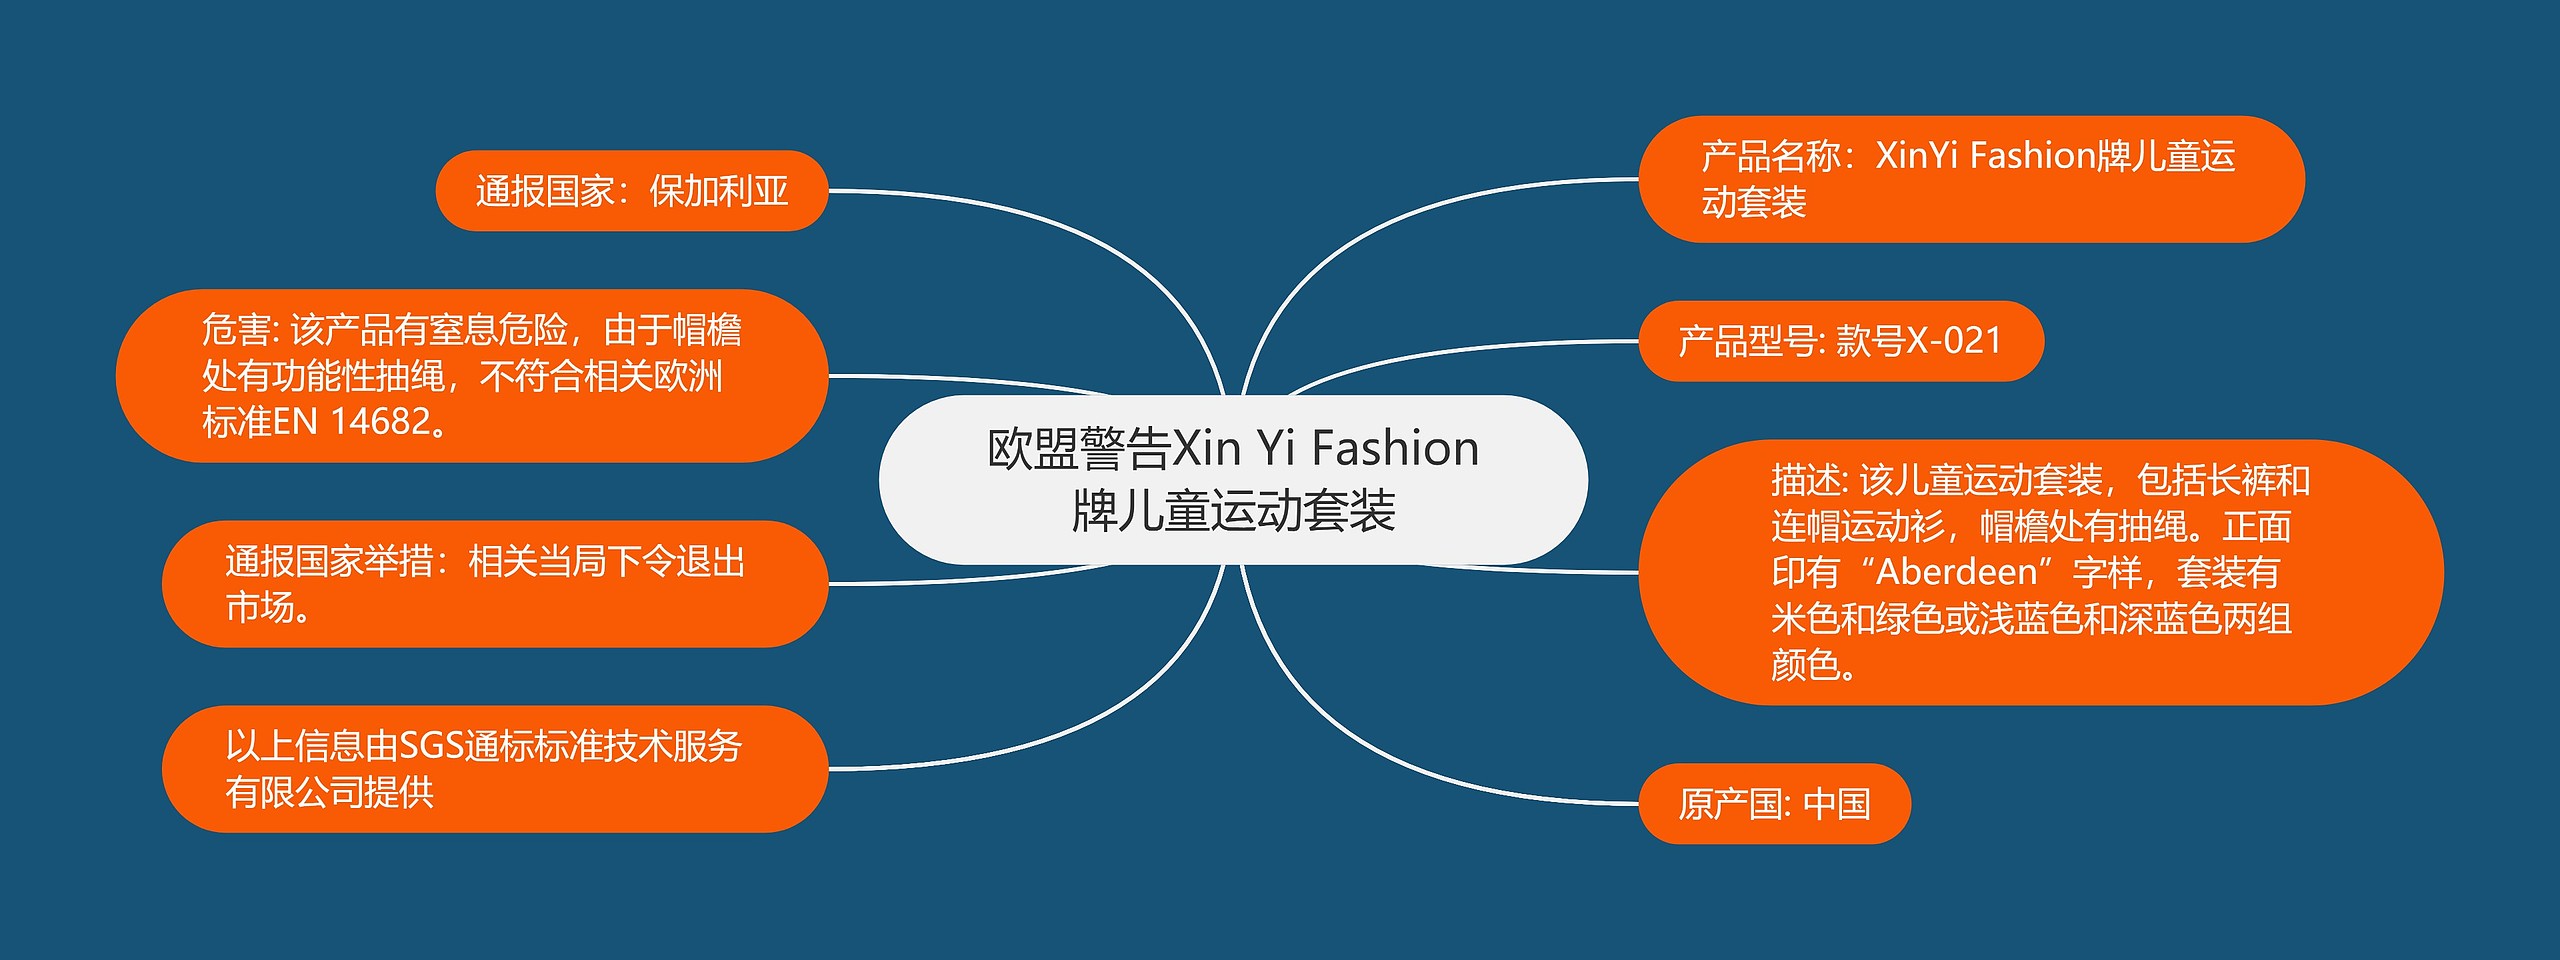 欧盟警告Xin Yi Fashion牌儿童运动套装